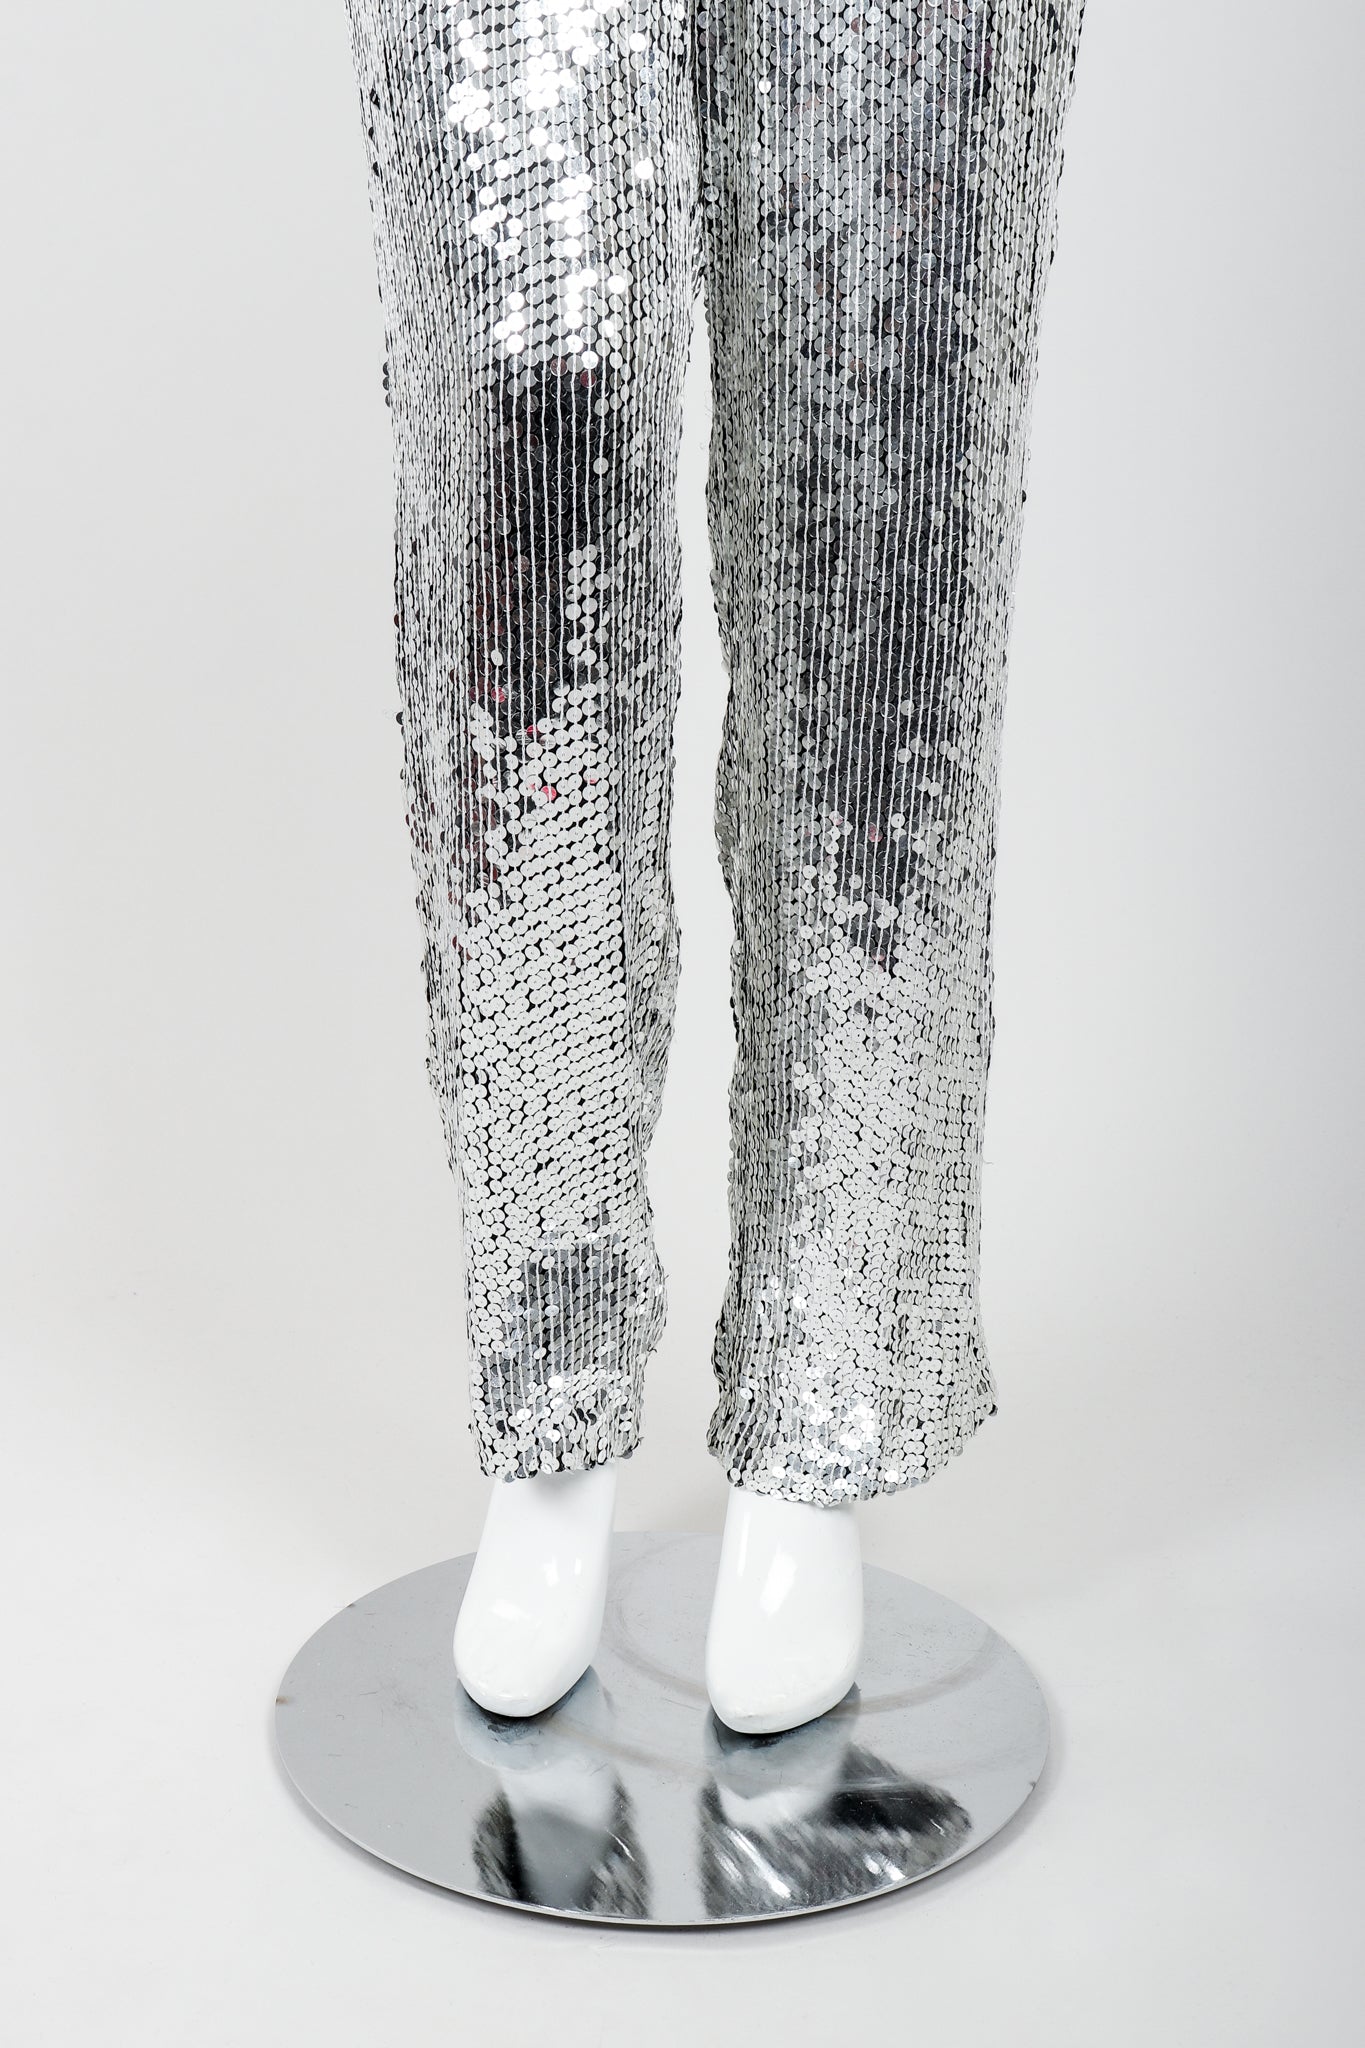 Vintage Metamorphosis Mirror Sequined Jumpsuit on Mannequin Legs at Recess Los Angeles